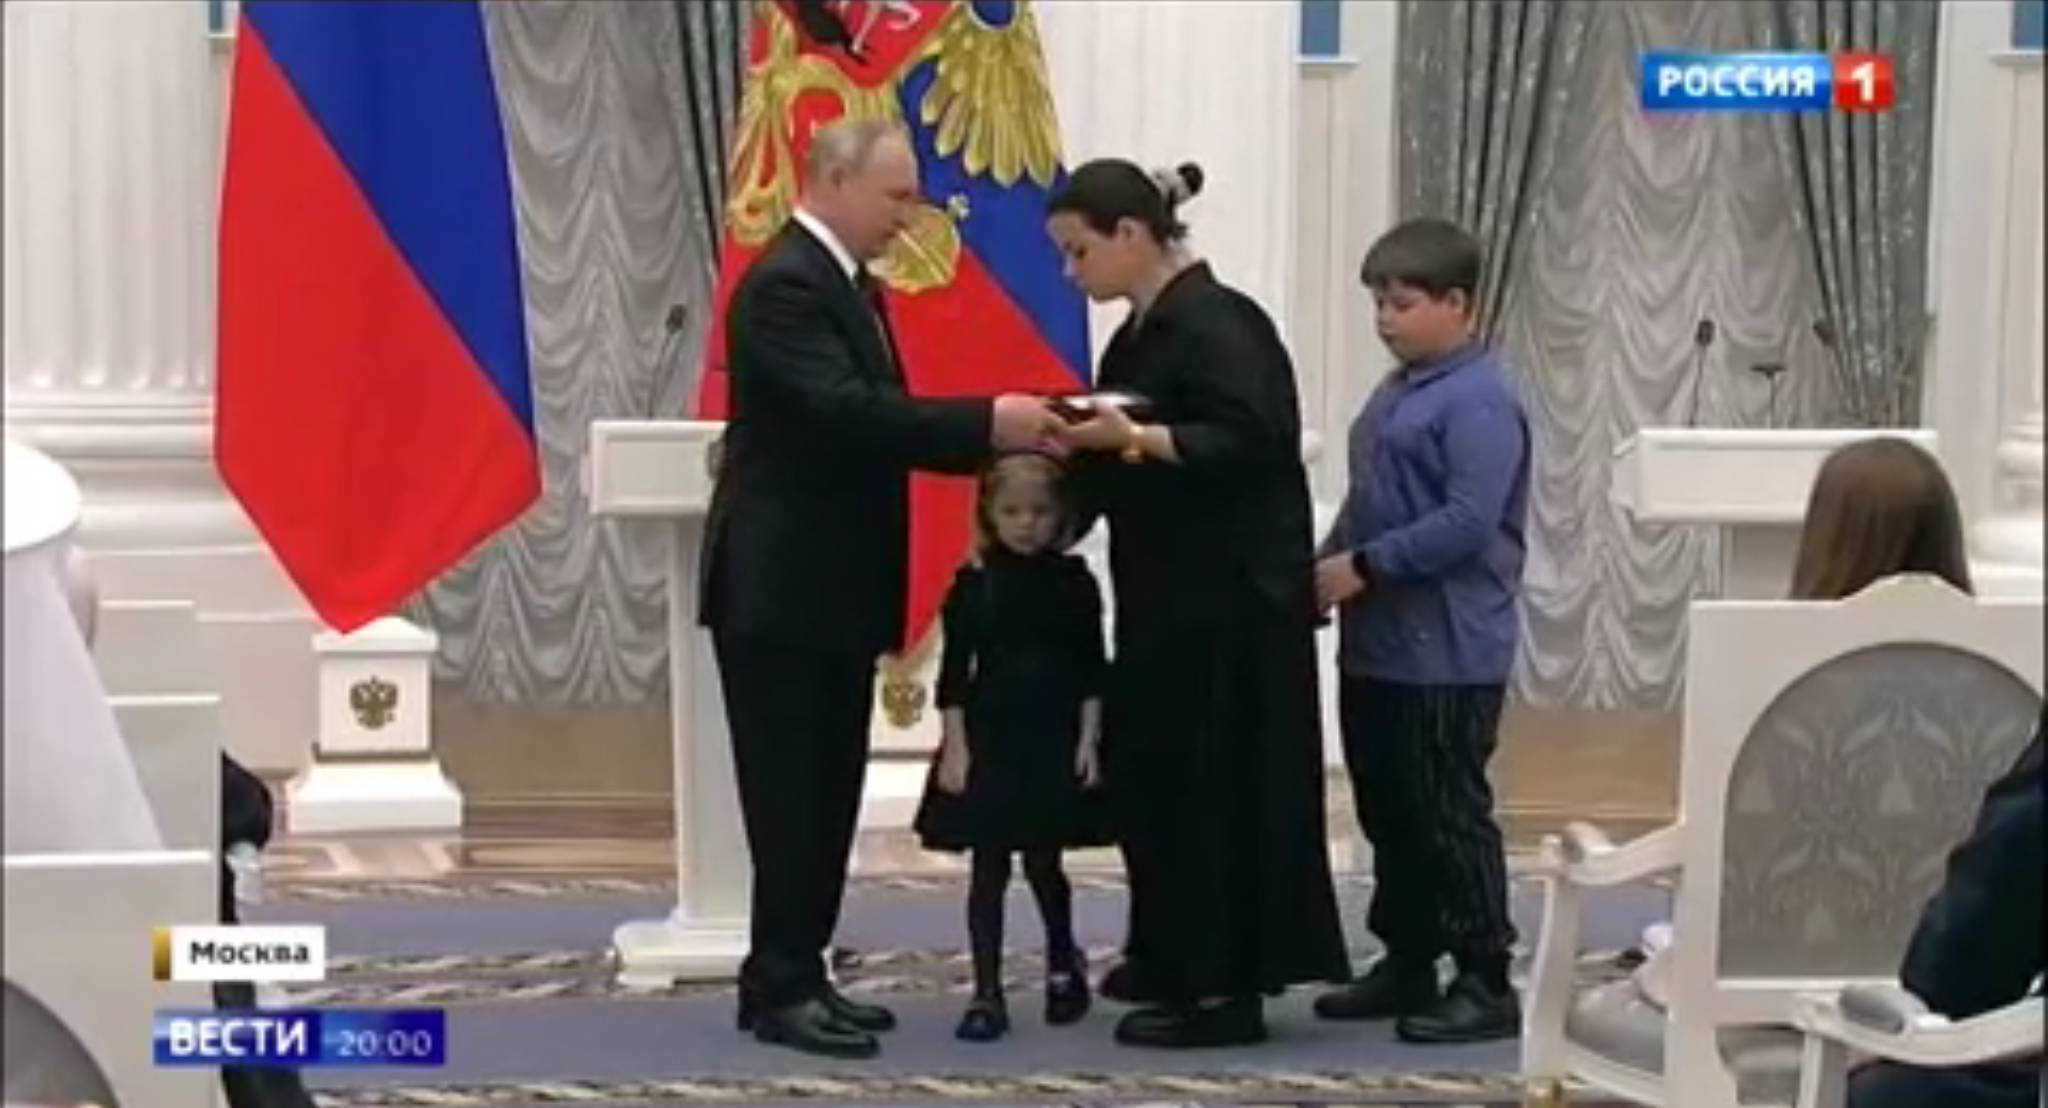 Kobieta w czerni z dwójka małych dzieci odbiera dyplom z rąk Putina